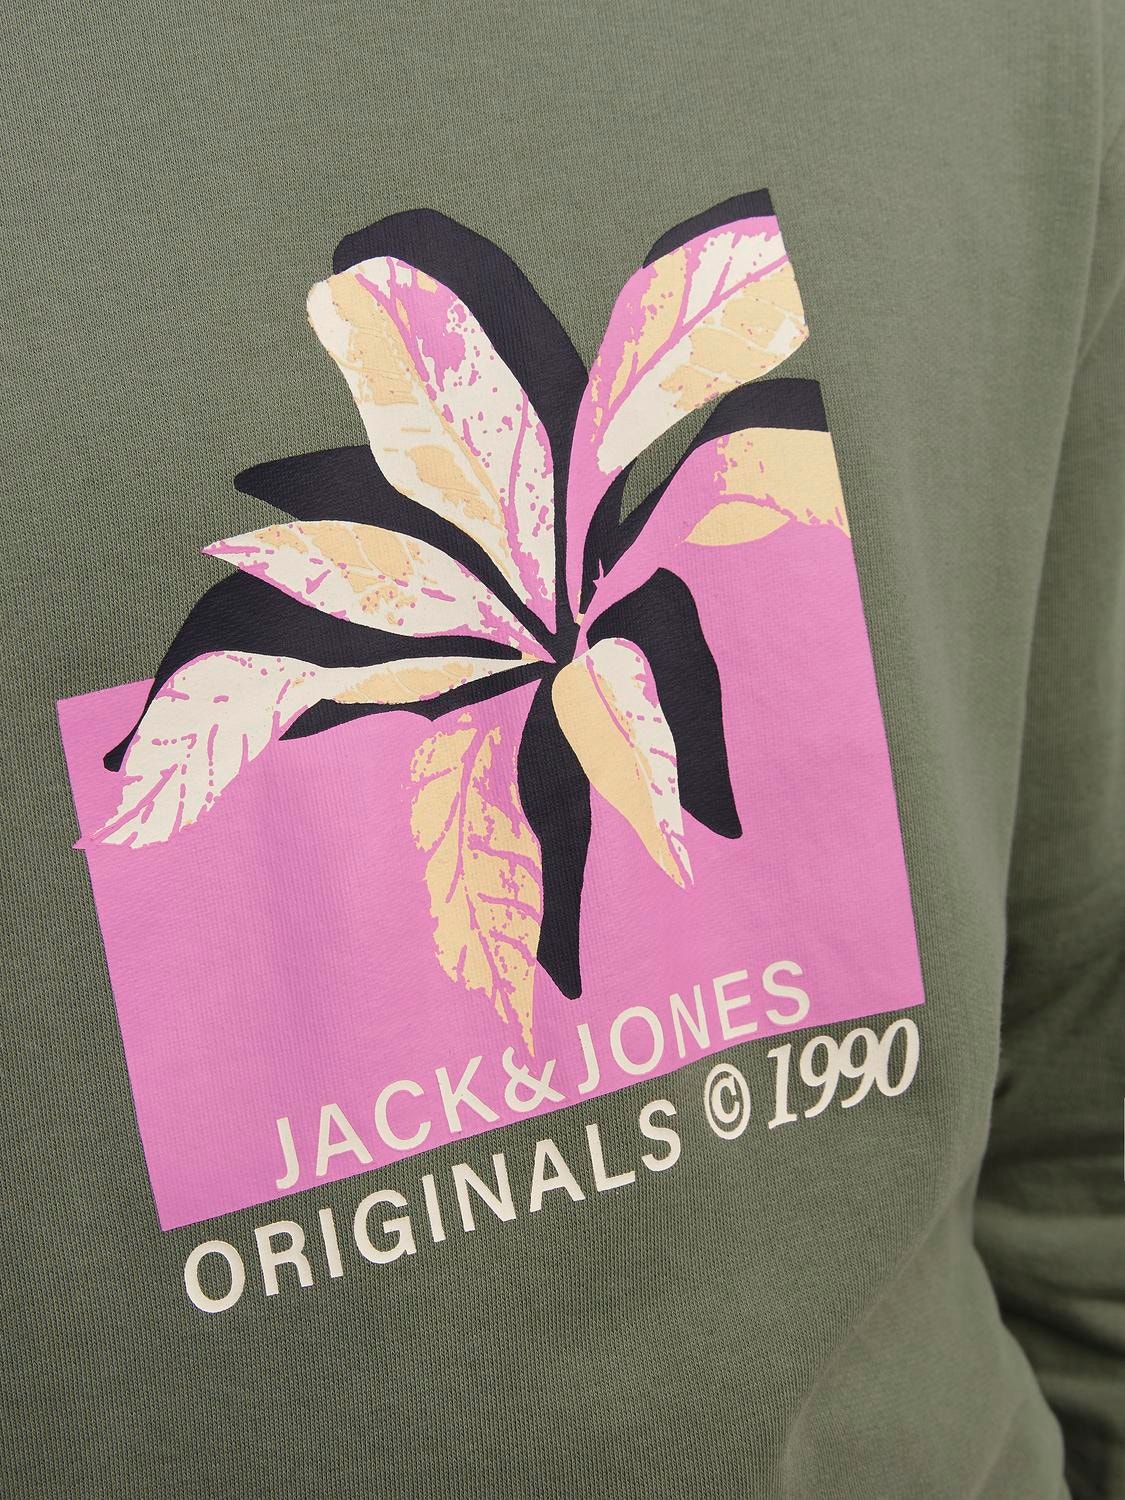 Jack & Jones Printed Crew neck Sweatshirt -Laurel Wreath - 12253655